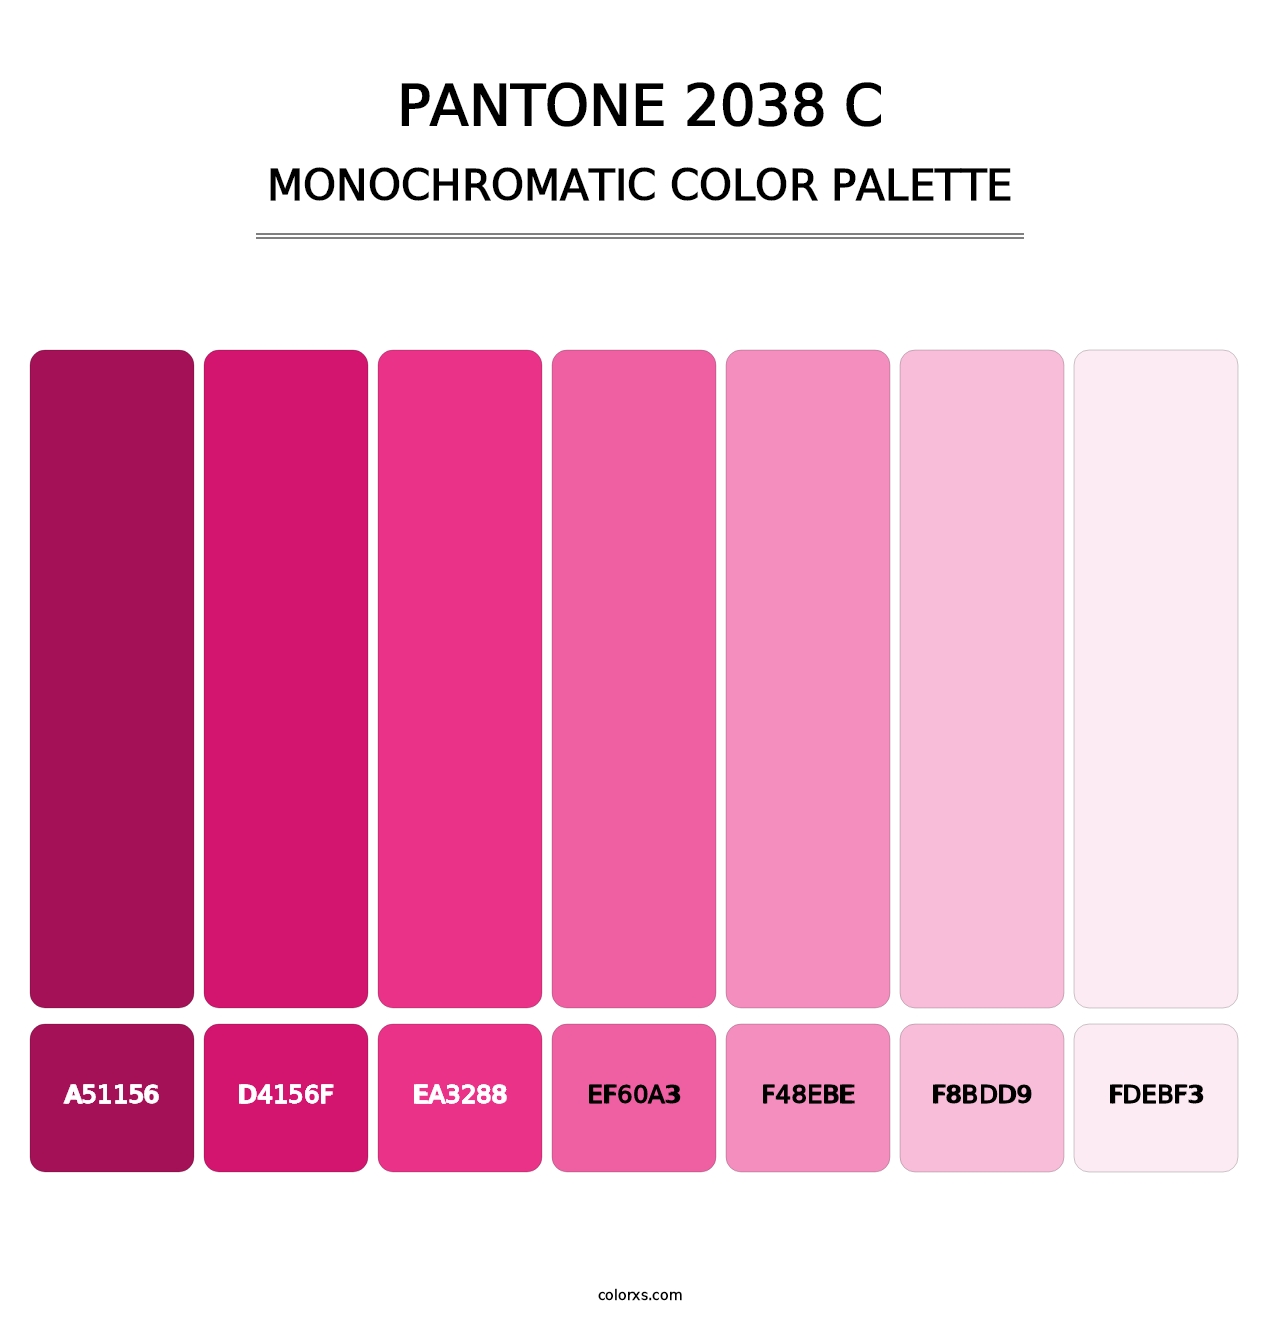 PANTONE 2038 C - Monochromatic Color Palette